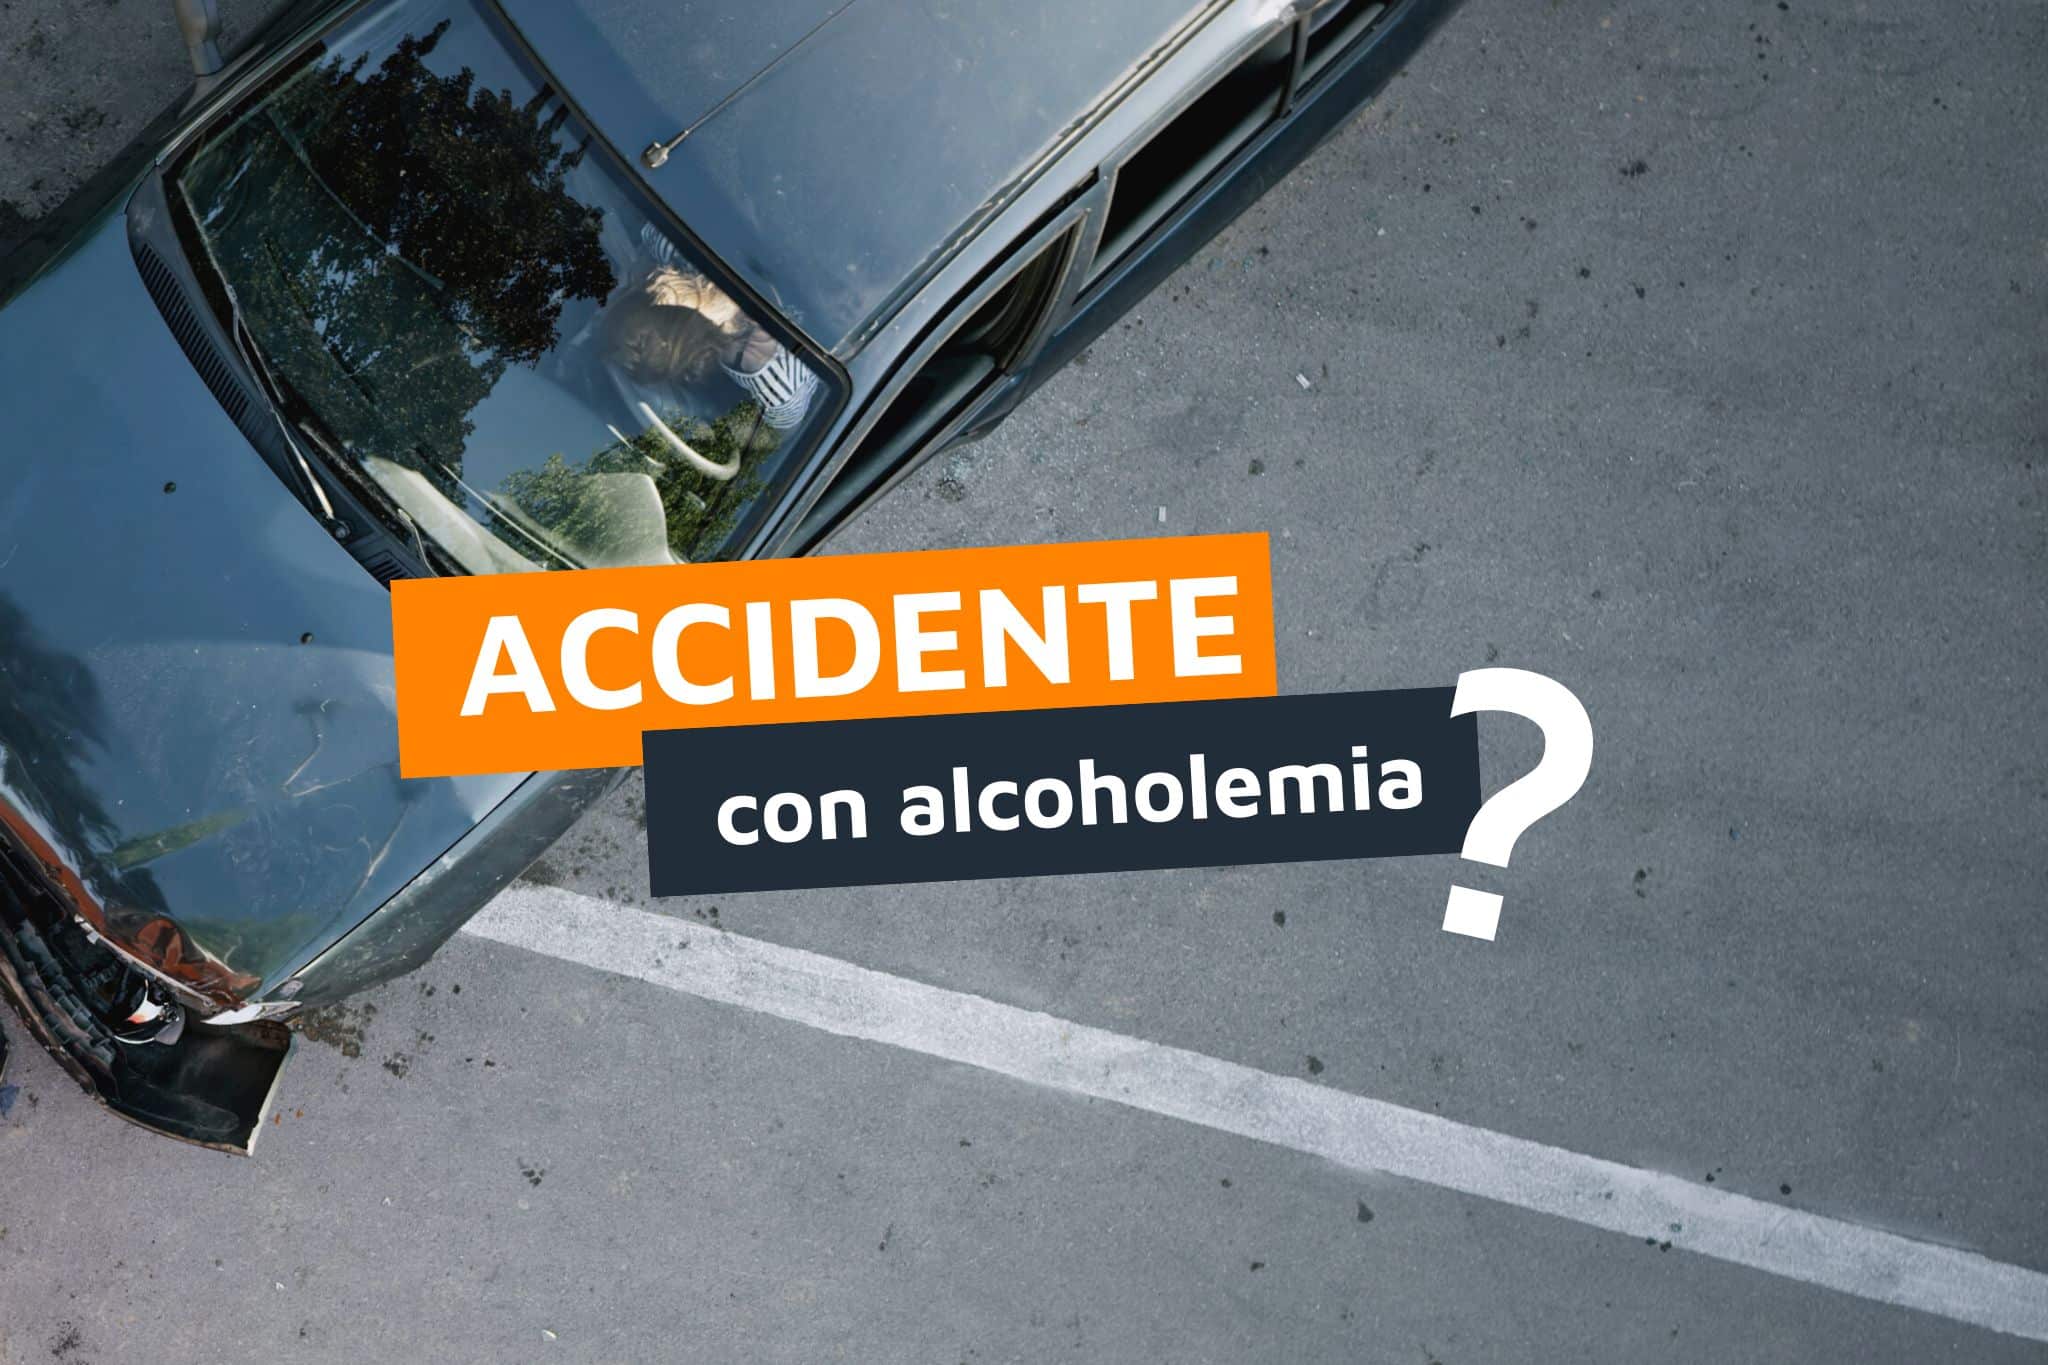 Accidente con alcoholemia